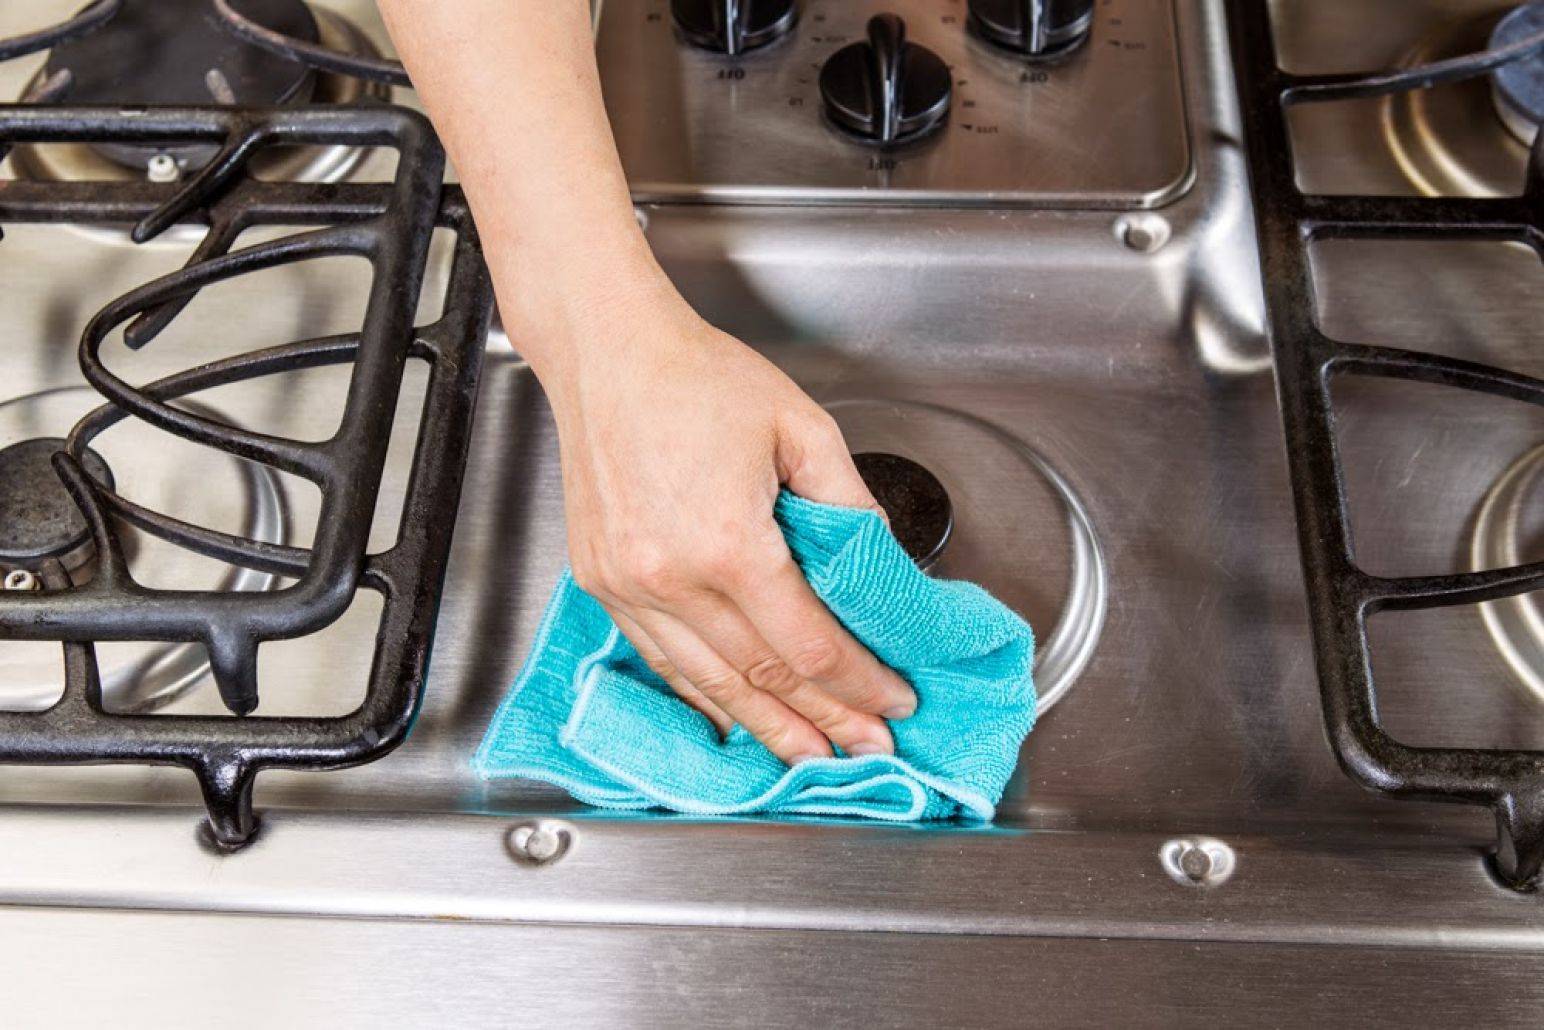 Как очистить решетку газовой плиты в домашних условиях?